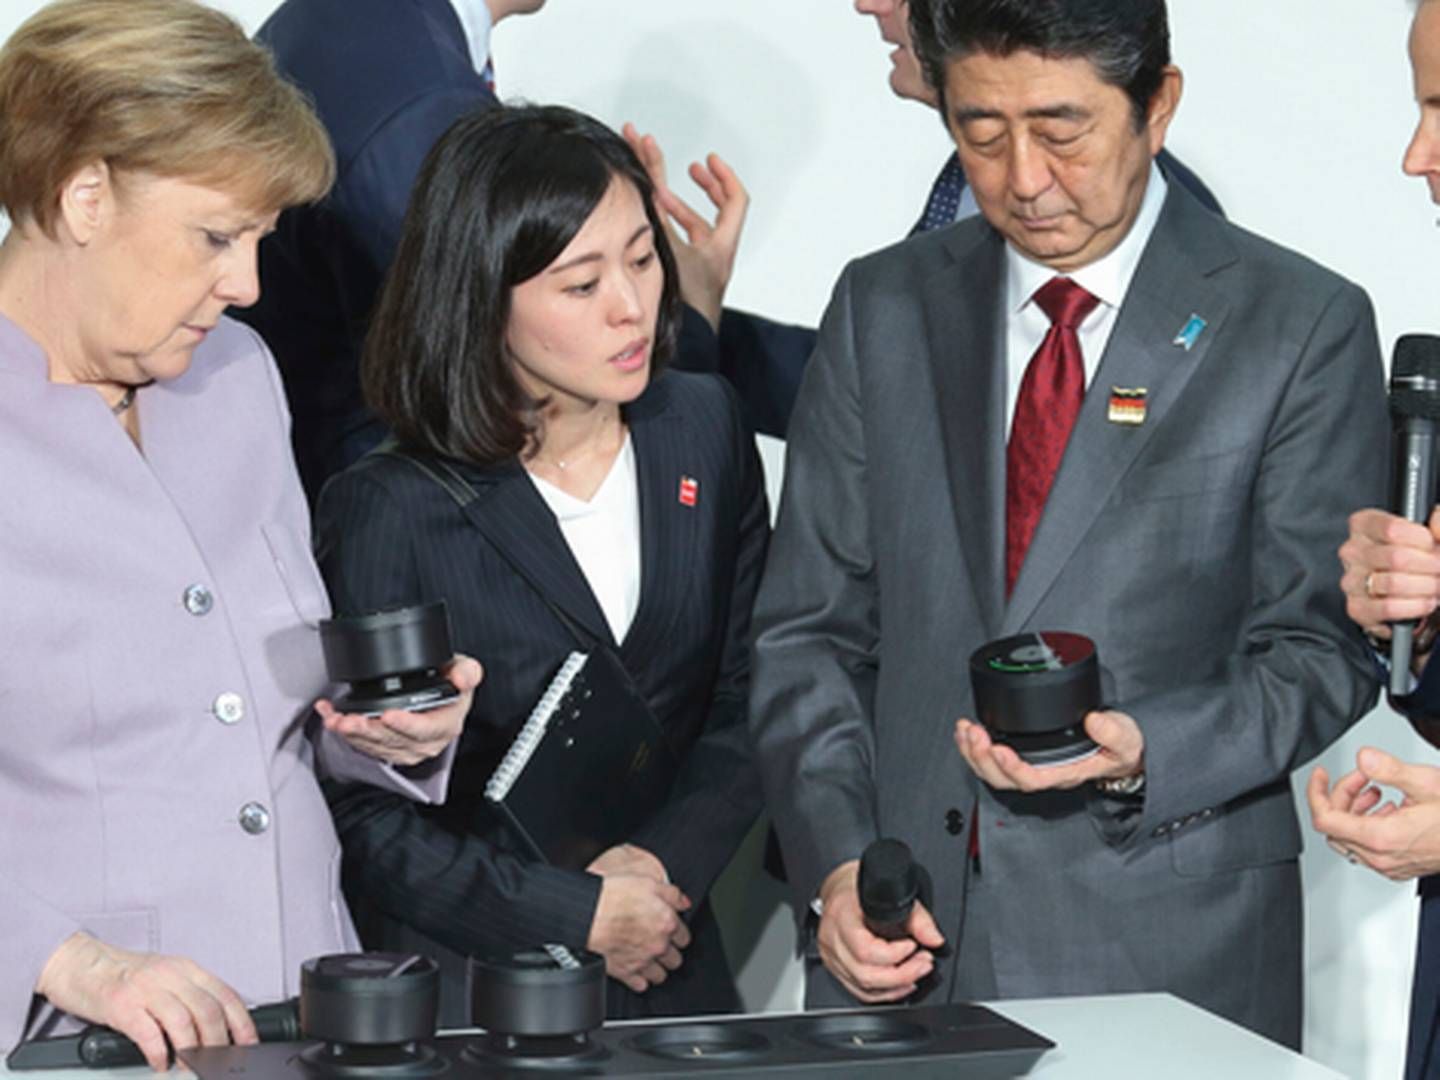 Den tyske kansler Angela Merkel inspicerer Sennheisers produkter på Cebit-messen sammen med den japanske ministerpræsident Shinzo Abe og Andreas Sennheiser ydest til højre.